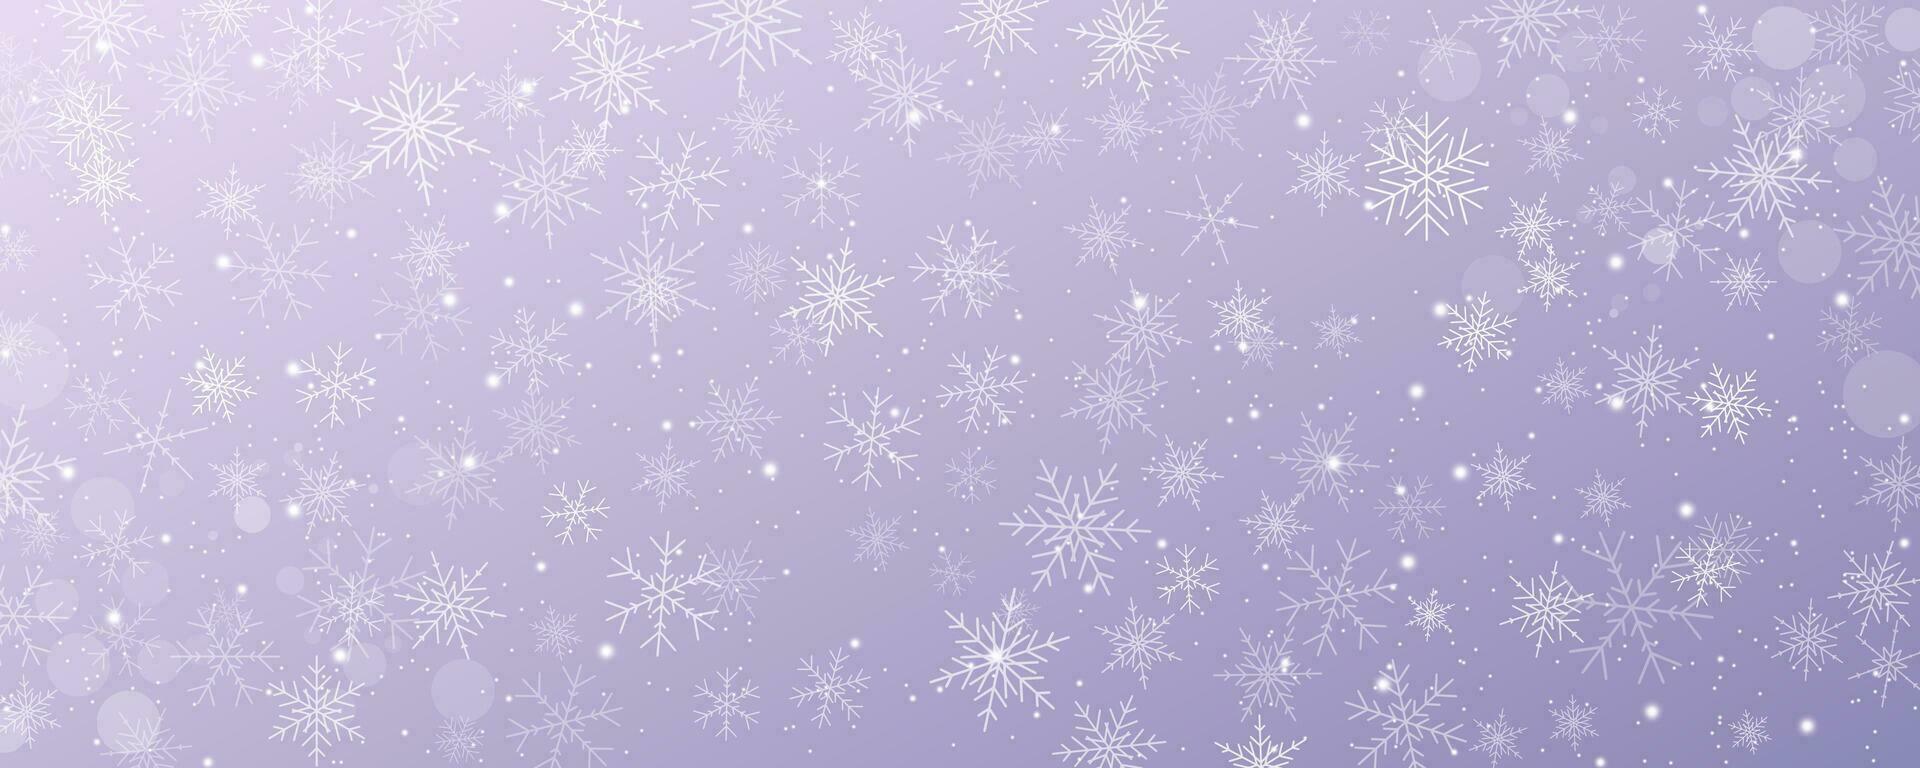 Navidad Nevado antecedentes. frío rosado invierno cielo. vector hielo tormenta de nieve en degradado textura con copos festivo nuevo año tema para temporada rebaja fondo de pantalla.